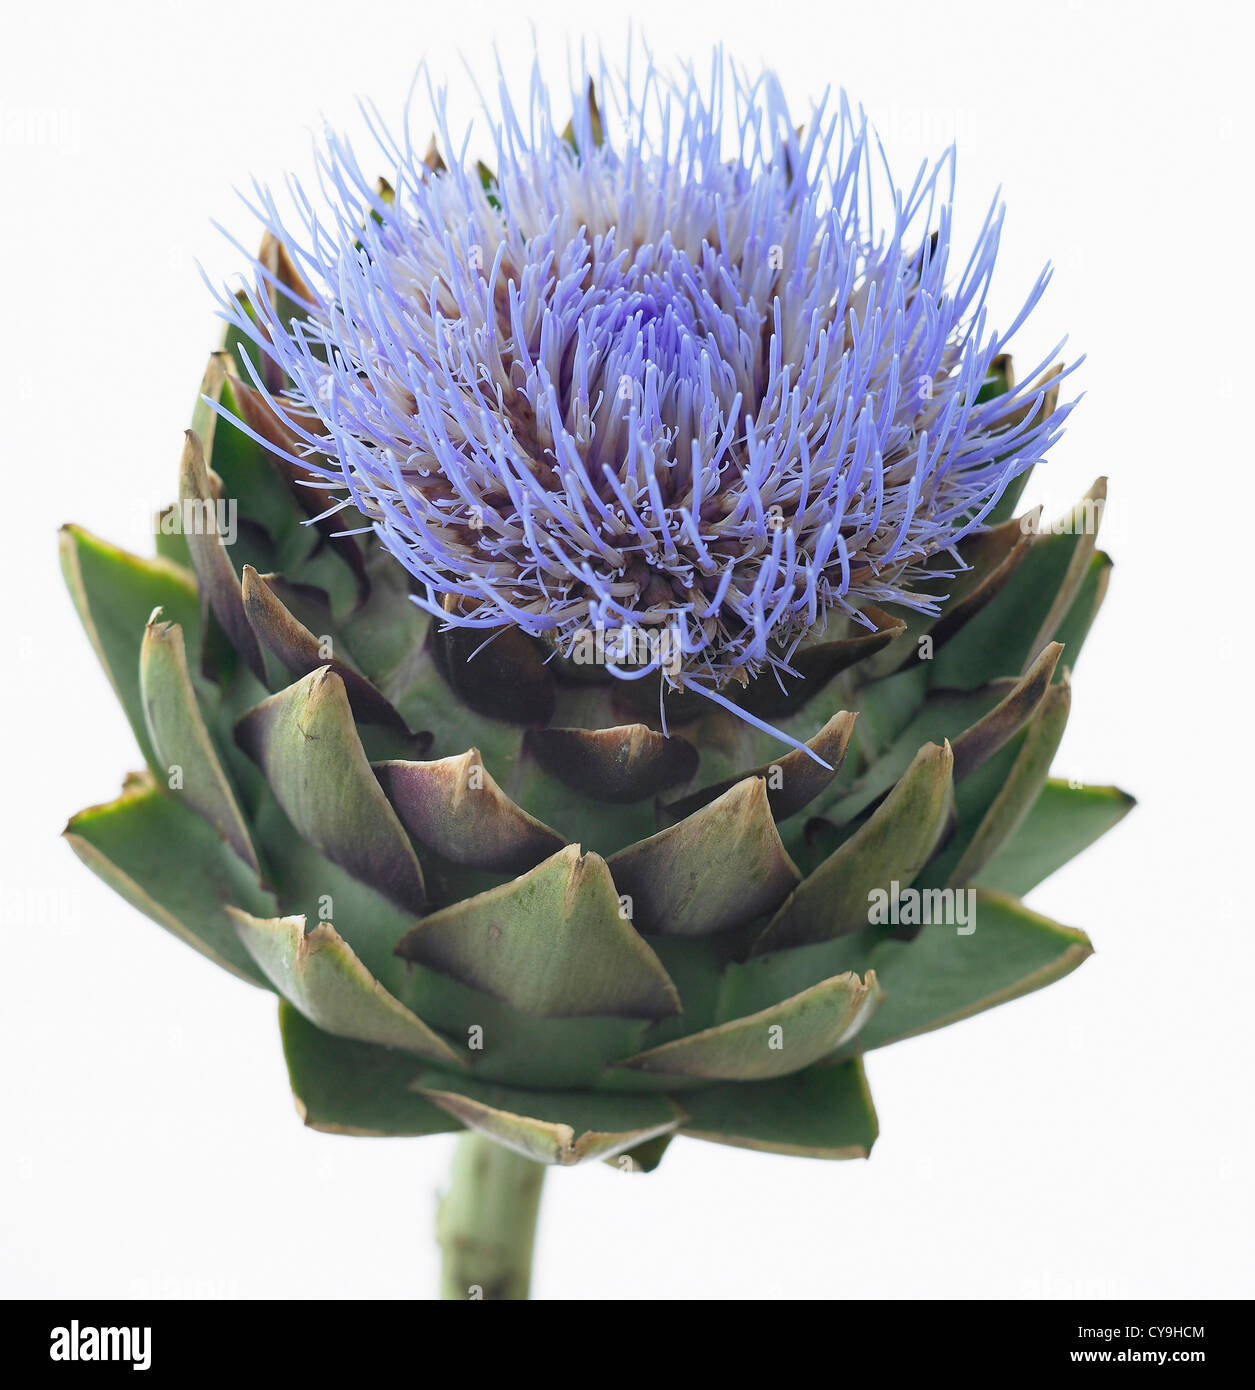 Cynara scolymus, de l'artichaut. Fleur bleu au-dessus de la woodsie feuilles vertes de cette plante vivace chardon comestible. Banque D'Images